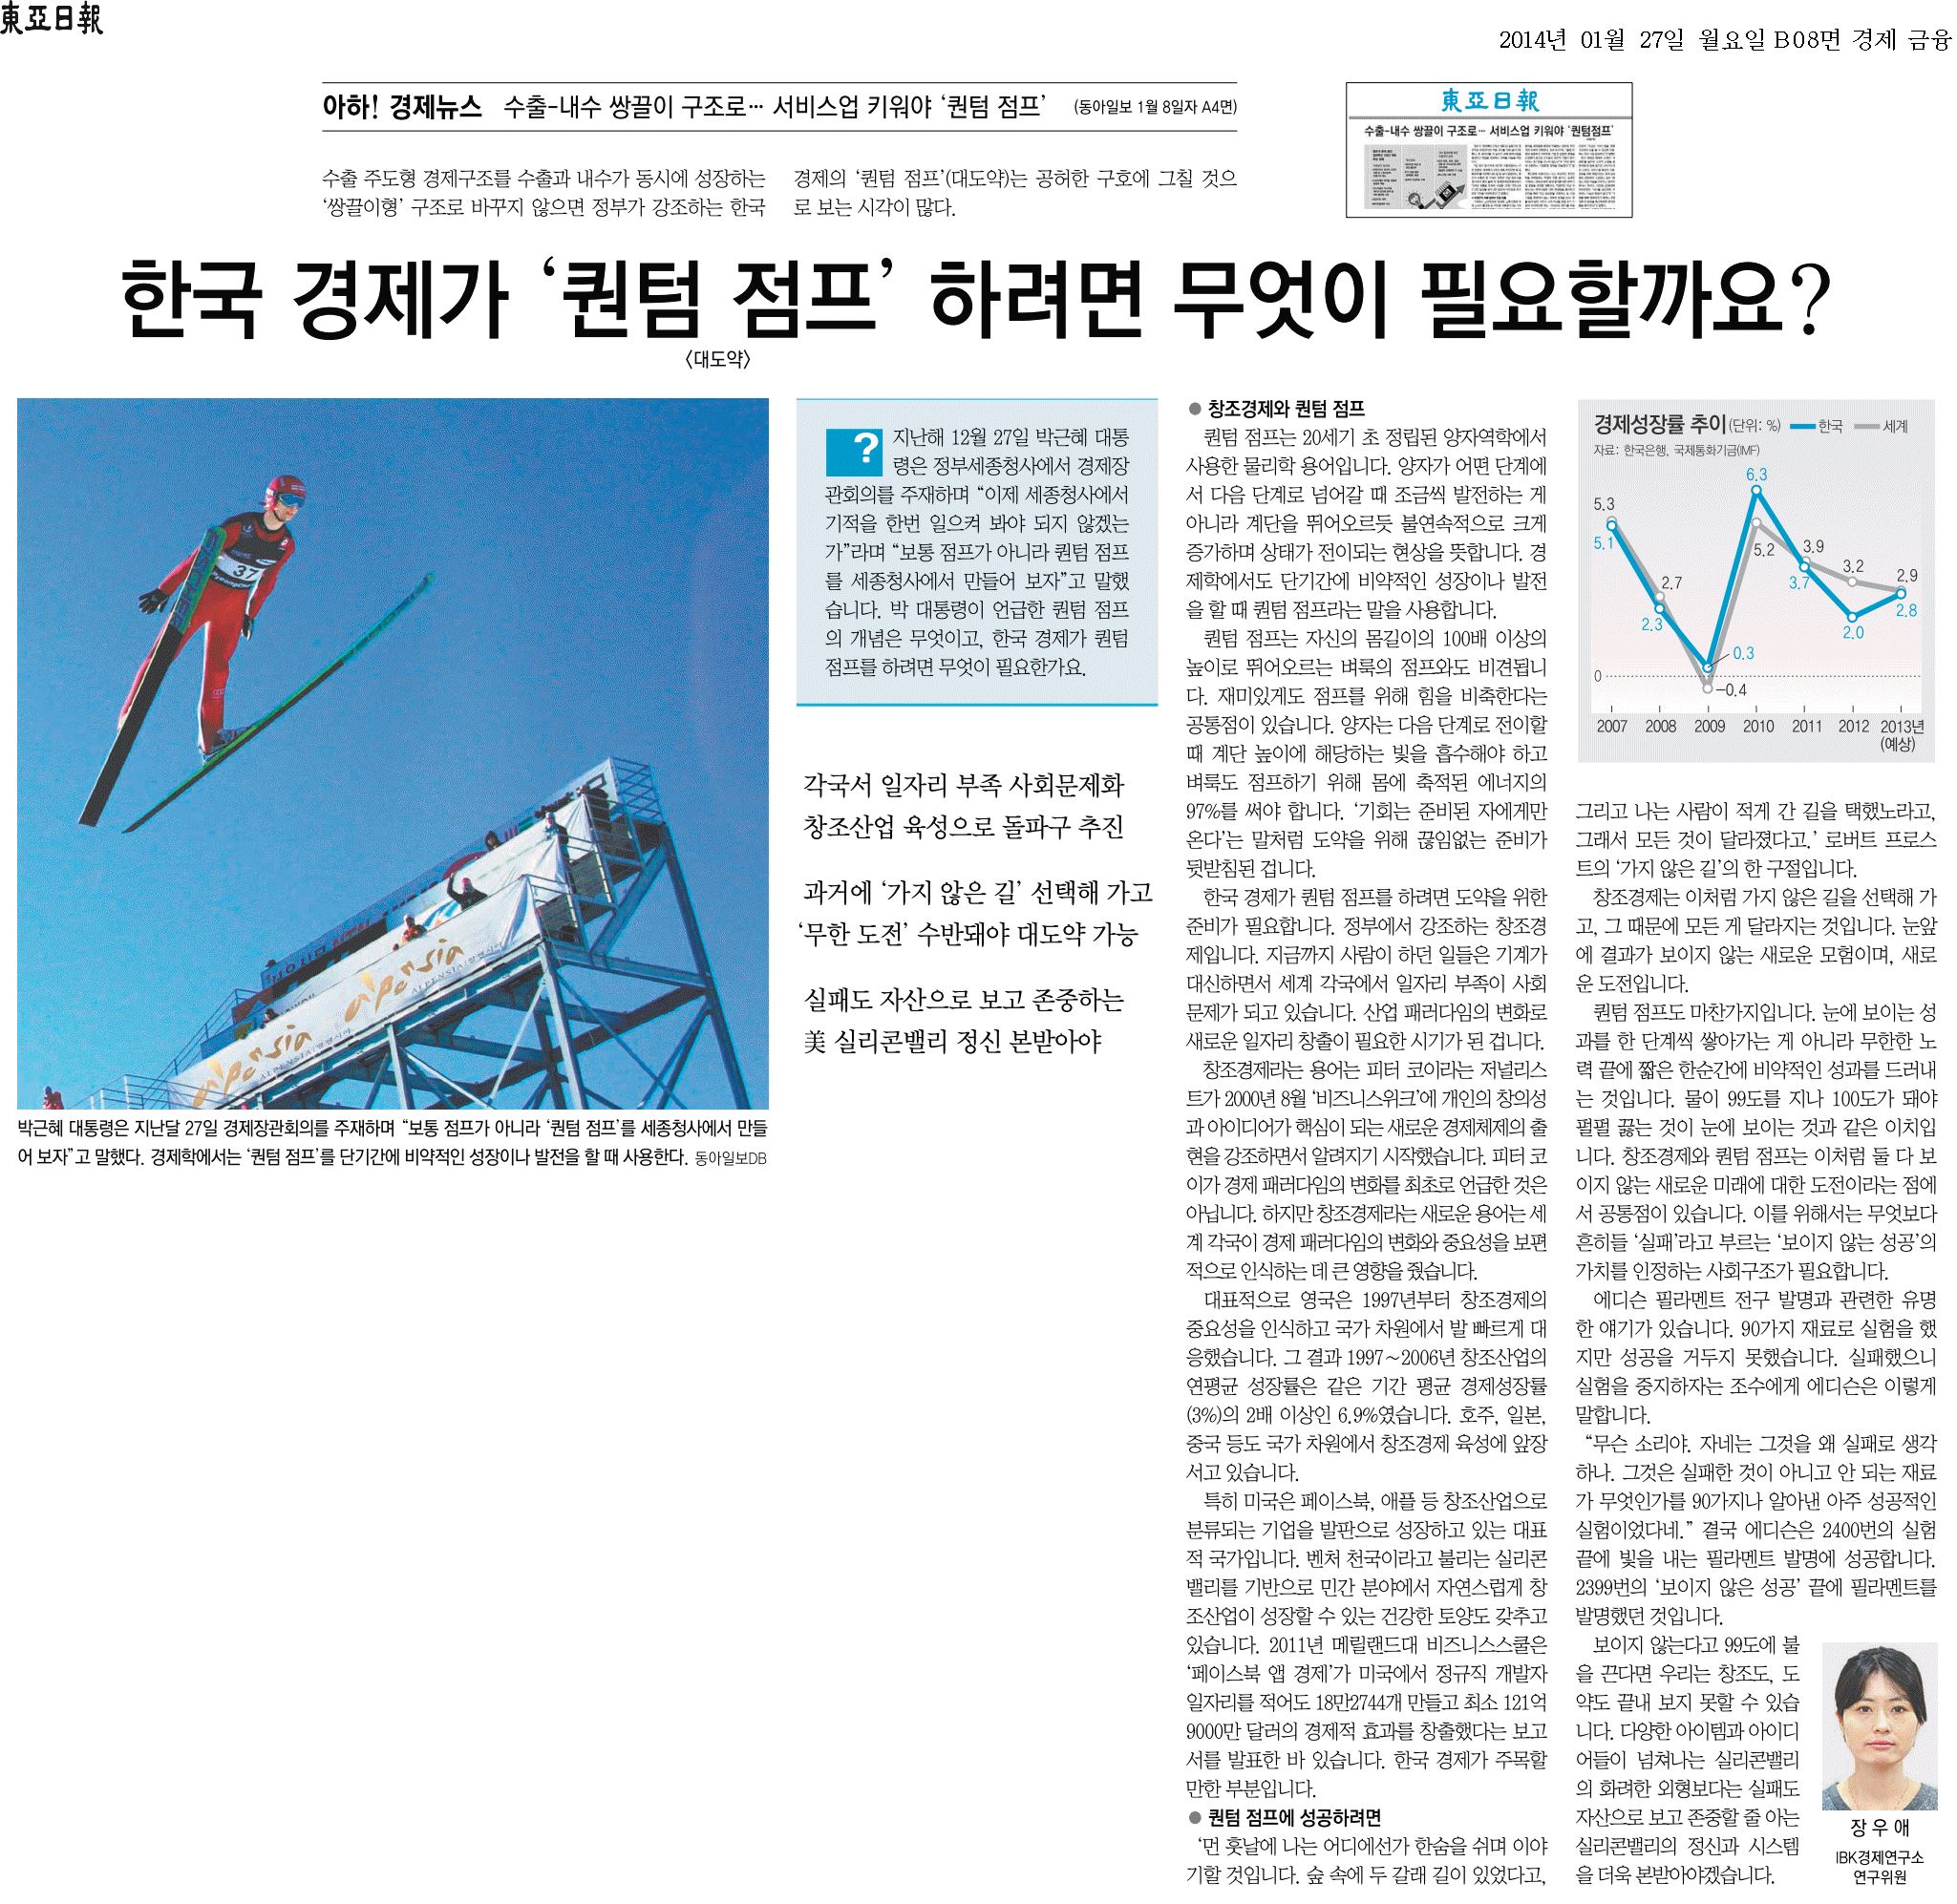 한국 경제가 퀀텀 점프 하려면 무엇이 필요할까요에 관한 신문기사  썸네일이미지